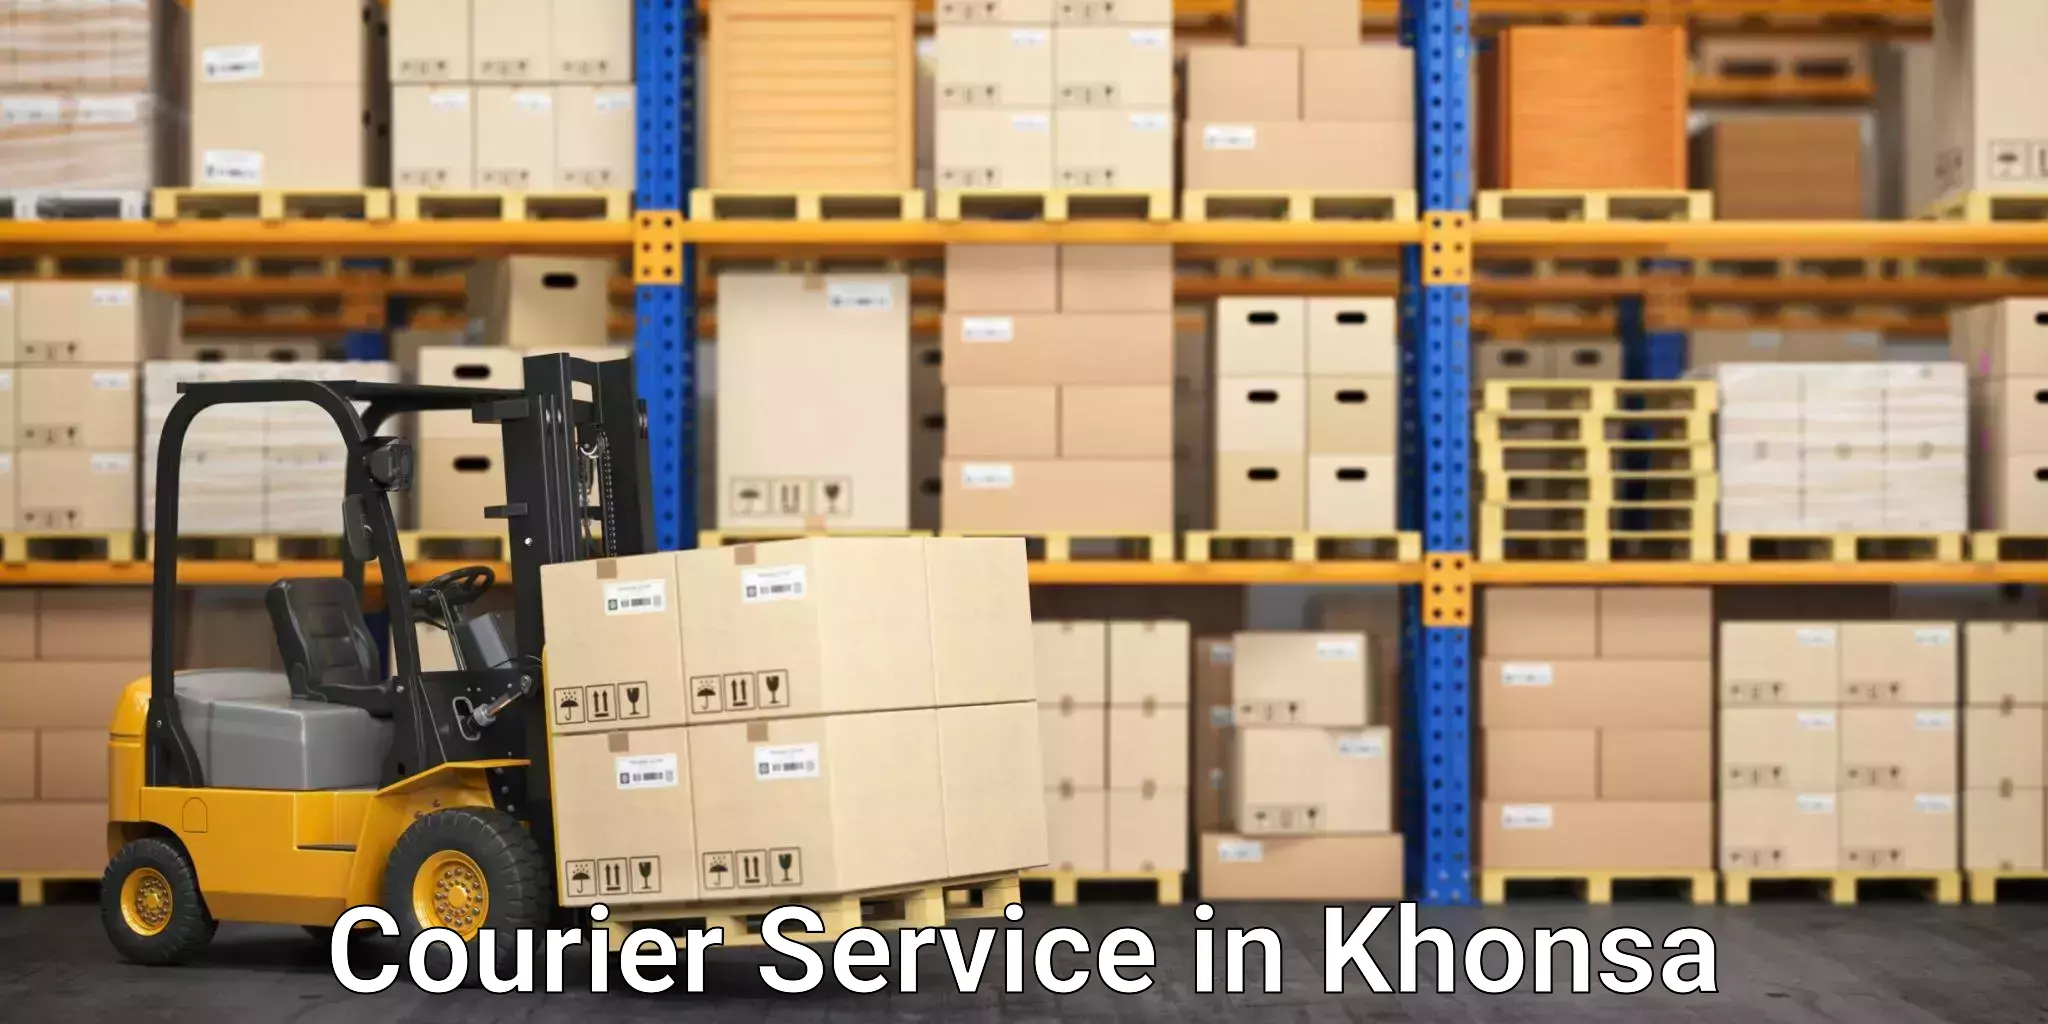 Specialized shipment handling in Khonsa